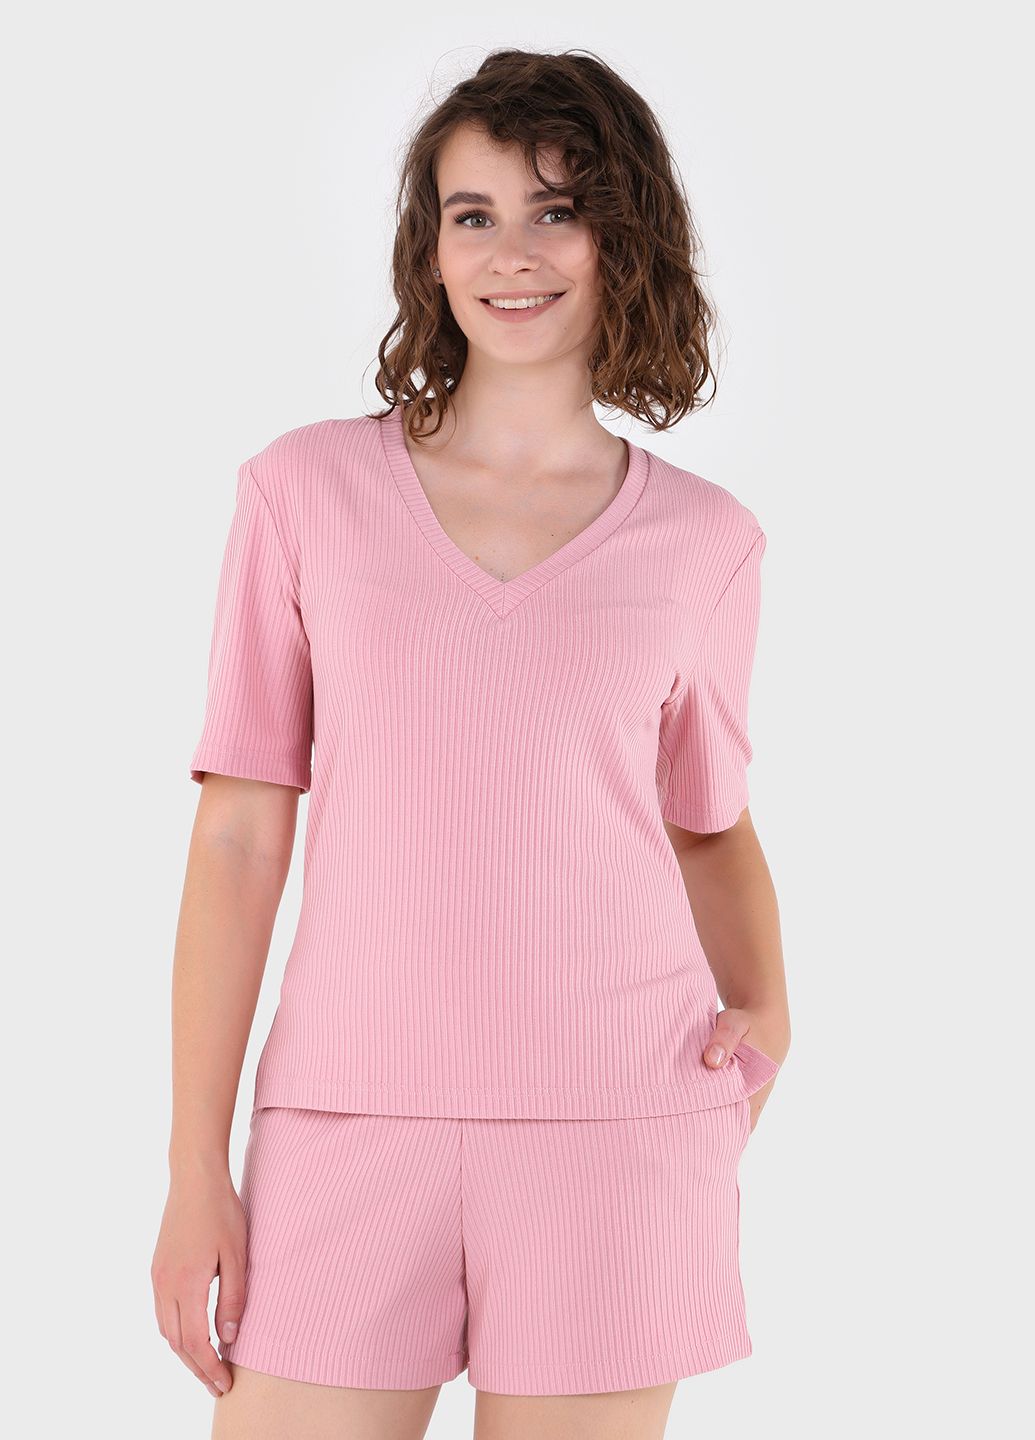 Купить Шорты женские в рубчик Merlini Картейра 300000036 - Розовый, 42-44 в интернет-магазине